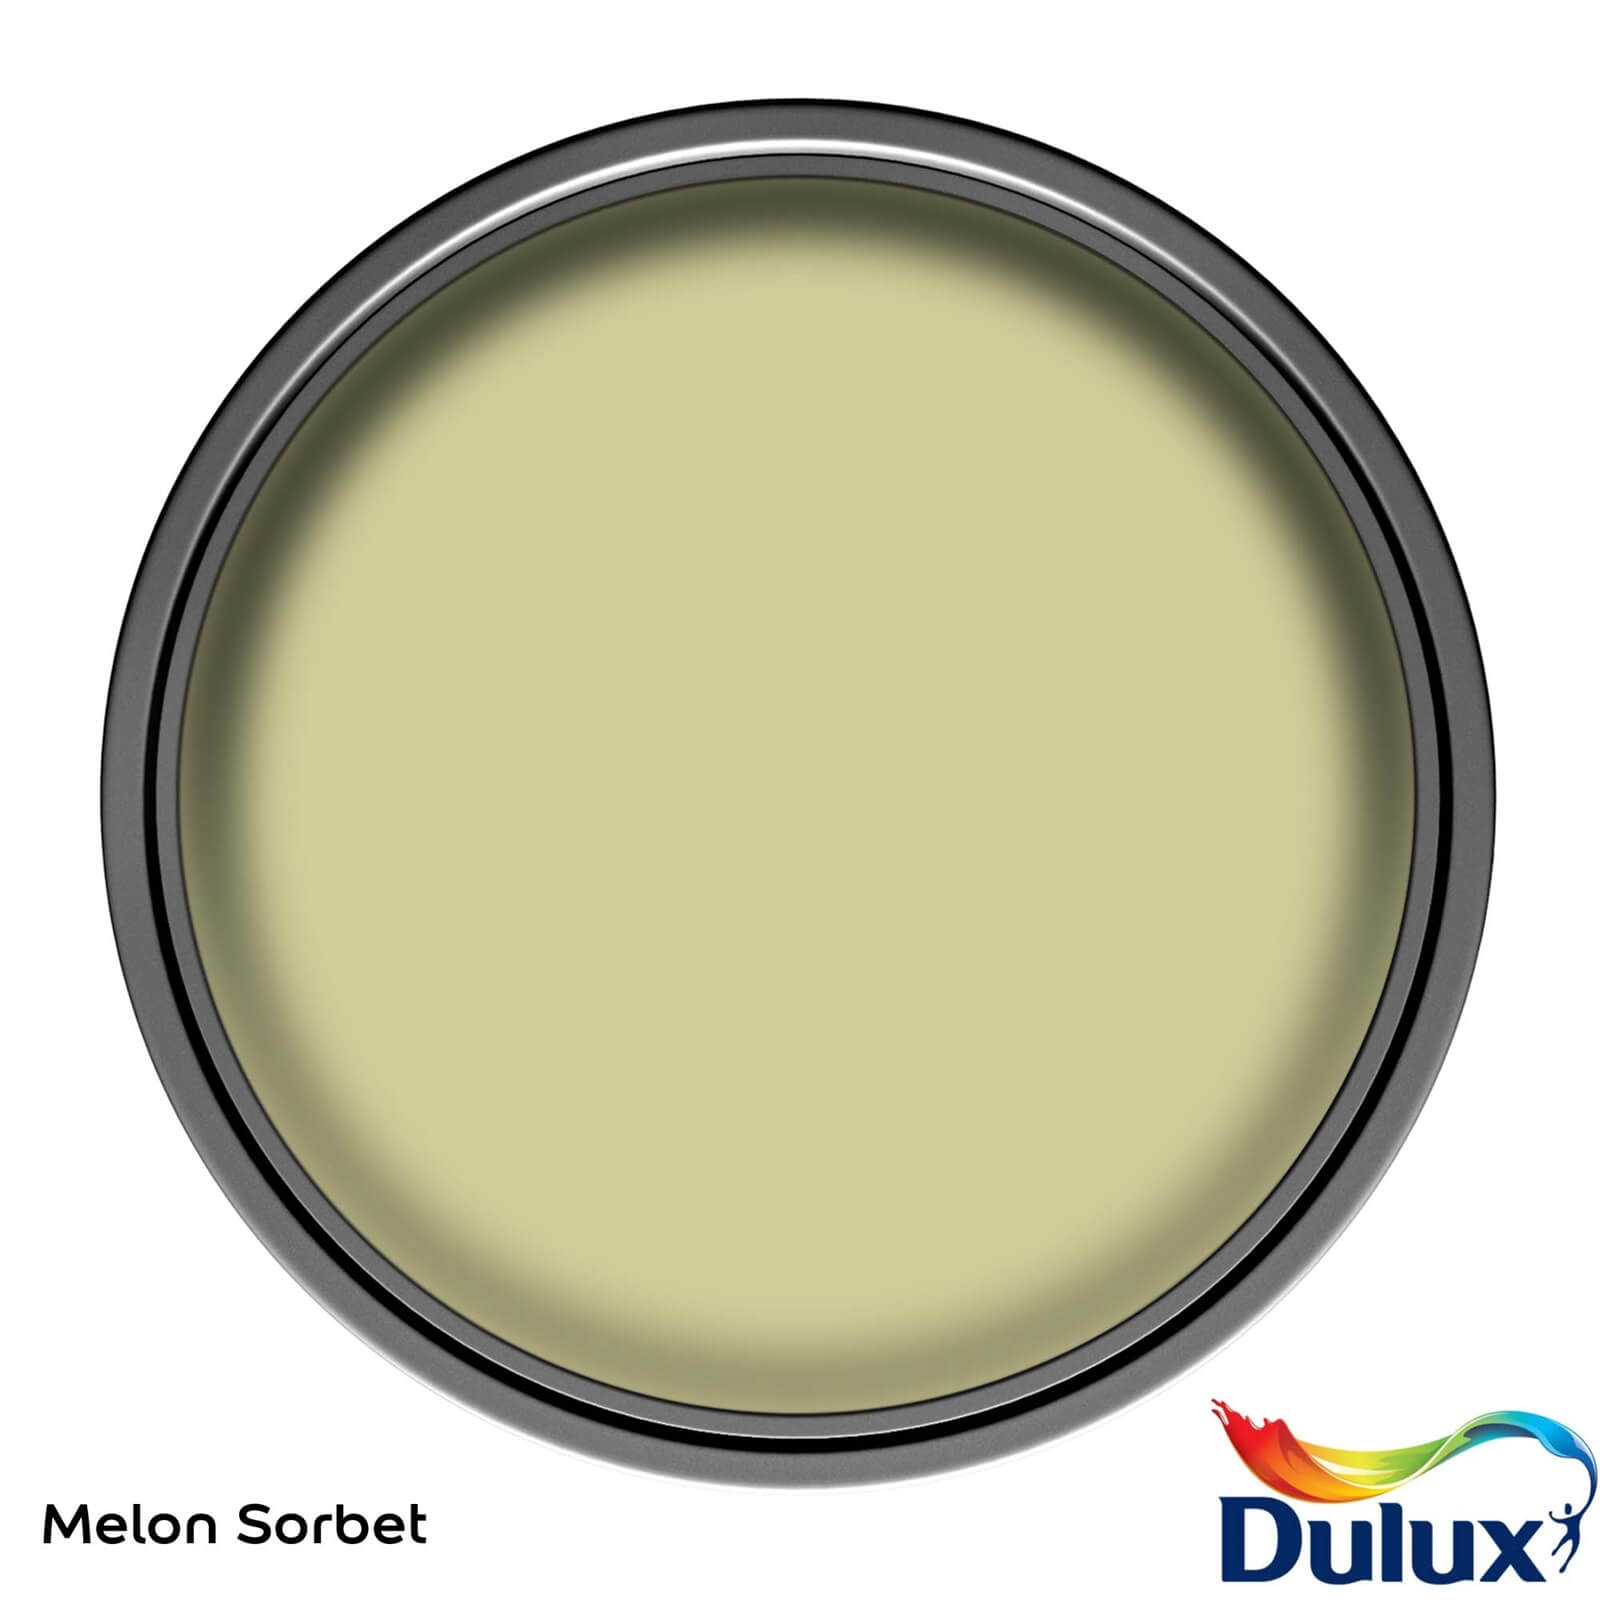 Dulux Easycare Washable & Tough Melon Sorbet Matt Paint - 2.5L